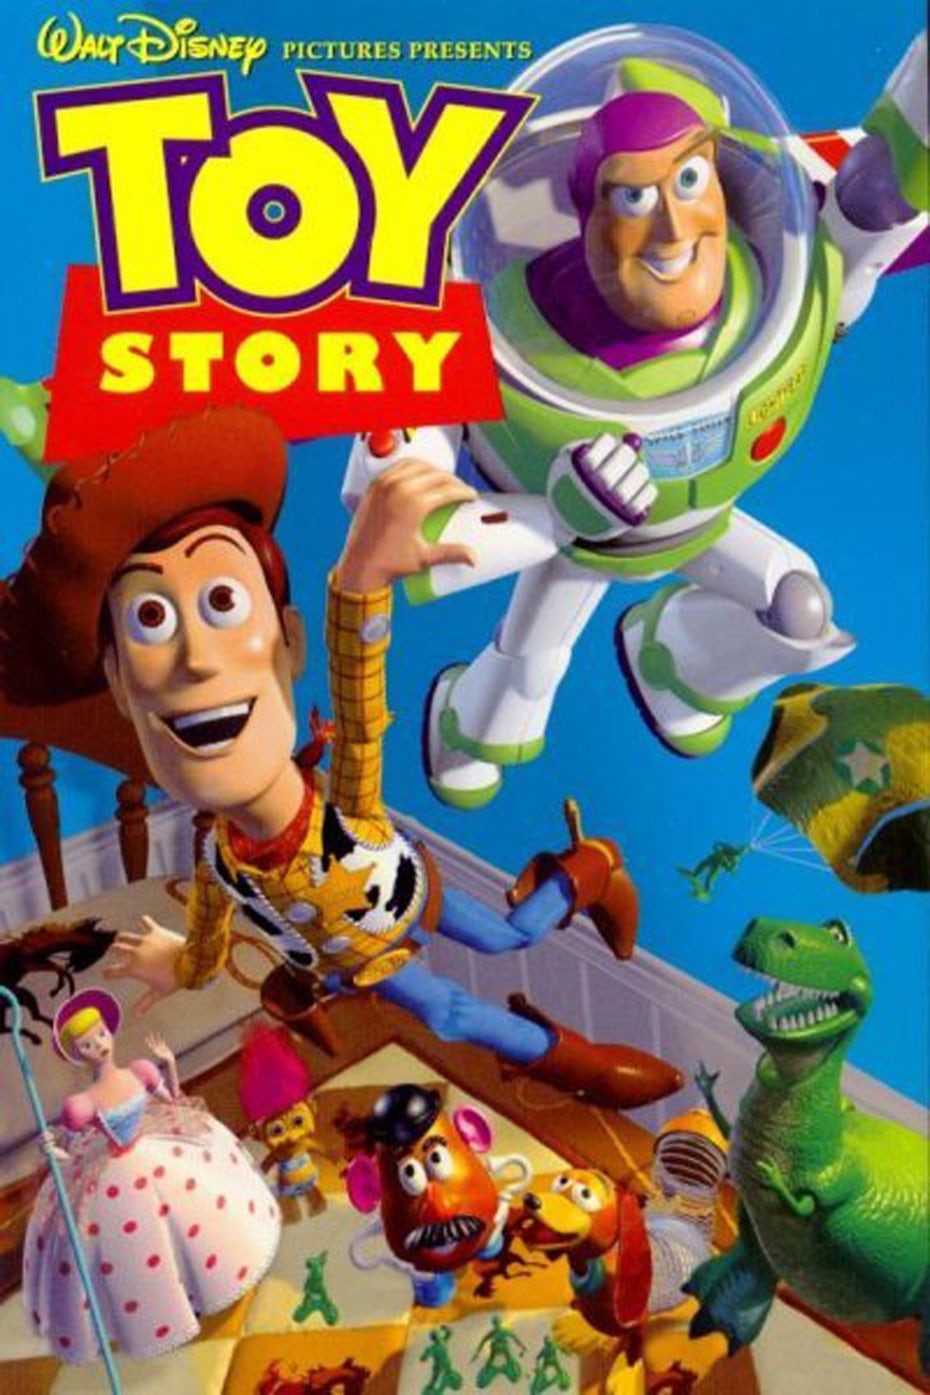  Плакат Toy Story "width =" 1200 "height =" 1800 "/> 
 
<figcaption> Rewatch Toy Story (1995) — первый в мире фильм со 100% компьютерной графикой все еще выглядит лучше, чем некоторые современные графики, сделанные более чем в 20 годы спустя Via Pixar </figcaption></figure>
<p> Но чем сложнее становятся методы анимации, тем и обсуждаются темы, которые они обсуждают. Хотя CGI используется практически в каждом фильме сегодня, даже полностью анимированные функции могут понравиться взрослым — просто посмотрите на популярные анимационные ситкомы, такие как <em> The Simpsons </em><em> Family Guy </em> или <em> South Park </em>. </p>
<p>.</p>
<p> Возможно, самая большая сила не в том, что он обращается к разным группам, а ко всем группам одновременно. Анимация позволяет художникам вызывать это детское удивление и страх не верить нашим глазам, а использовать эту силу для более зрелого рассказывания историй и даже бизнеса, как мы объясним ниже. </p>
<p> Как эта визуальная техника может понравиться как нашему внутреннему ребенку, так и нашему проницательному взрослому? Достаточно взглянуть на практически любой фильм <em> Pixar </em>. Это безопасное место — вы собираетесь сказать мне, что у вас не было туманных глаз в течение первых десяти минут <em> Up </em>? </p>
<h2><span id=